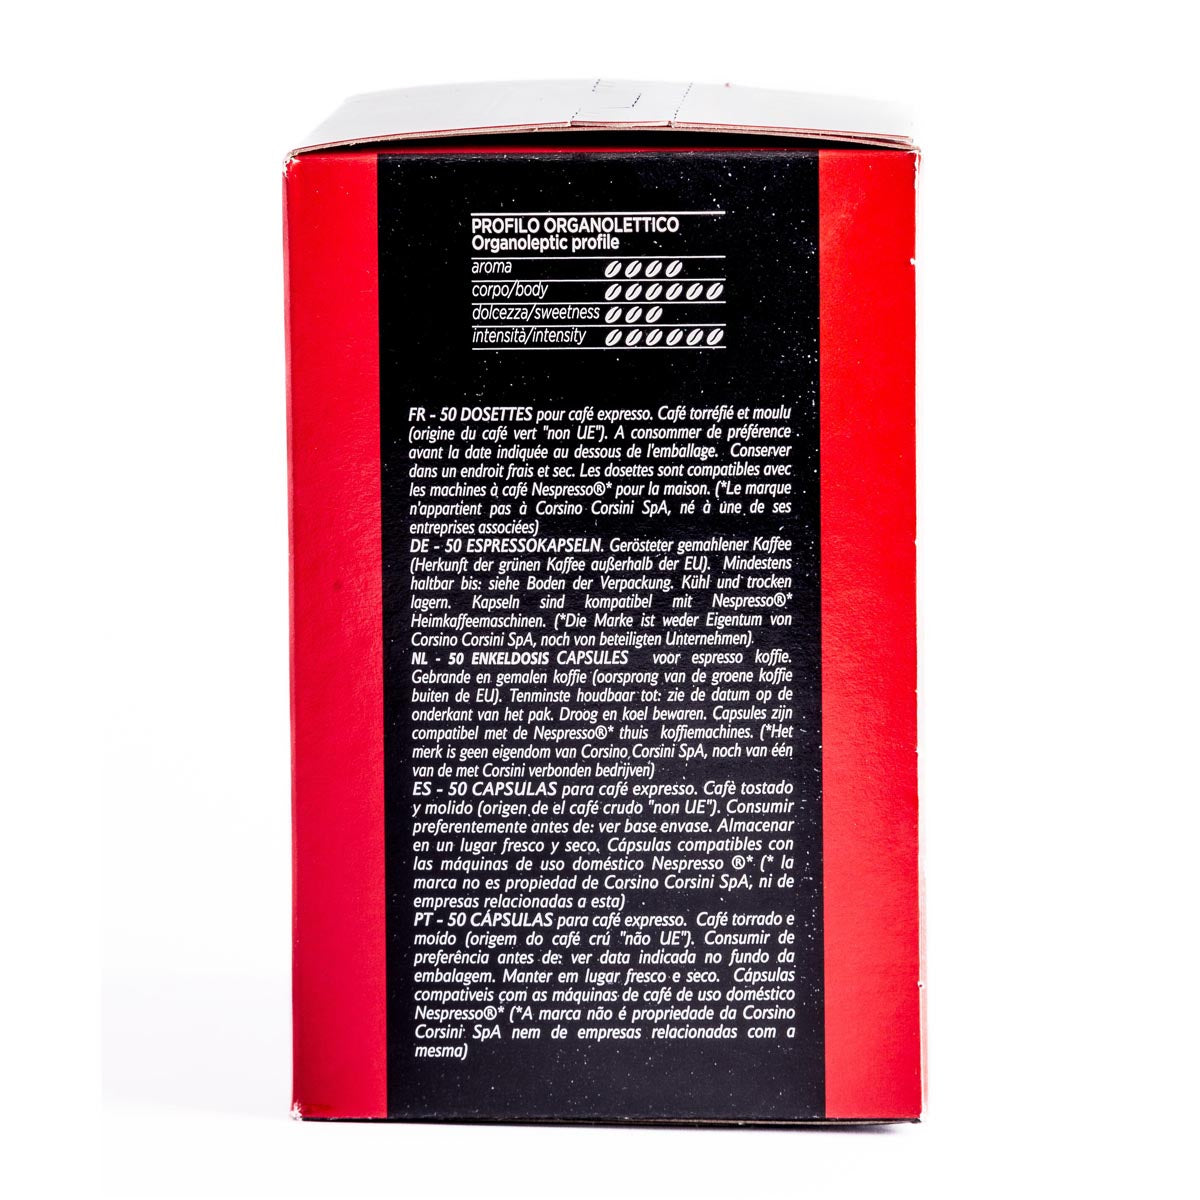 50 Nespresso® compatible coffee capsules | Classico Italiano